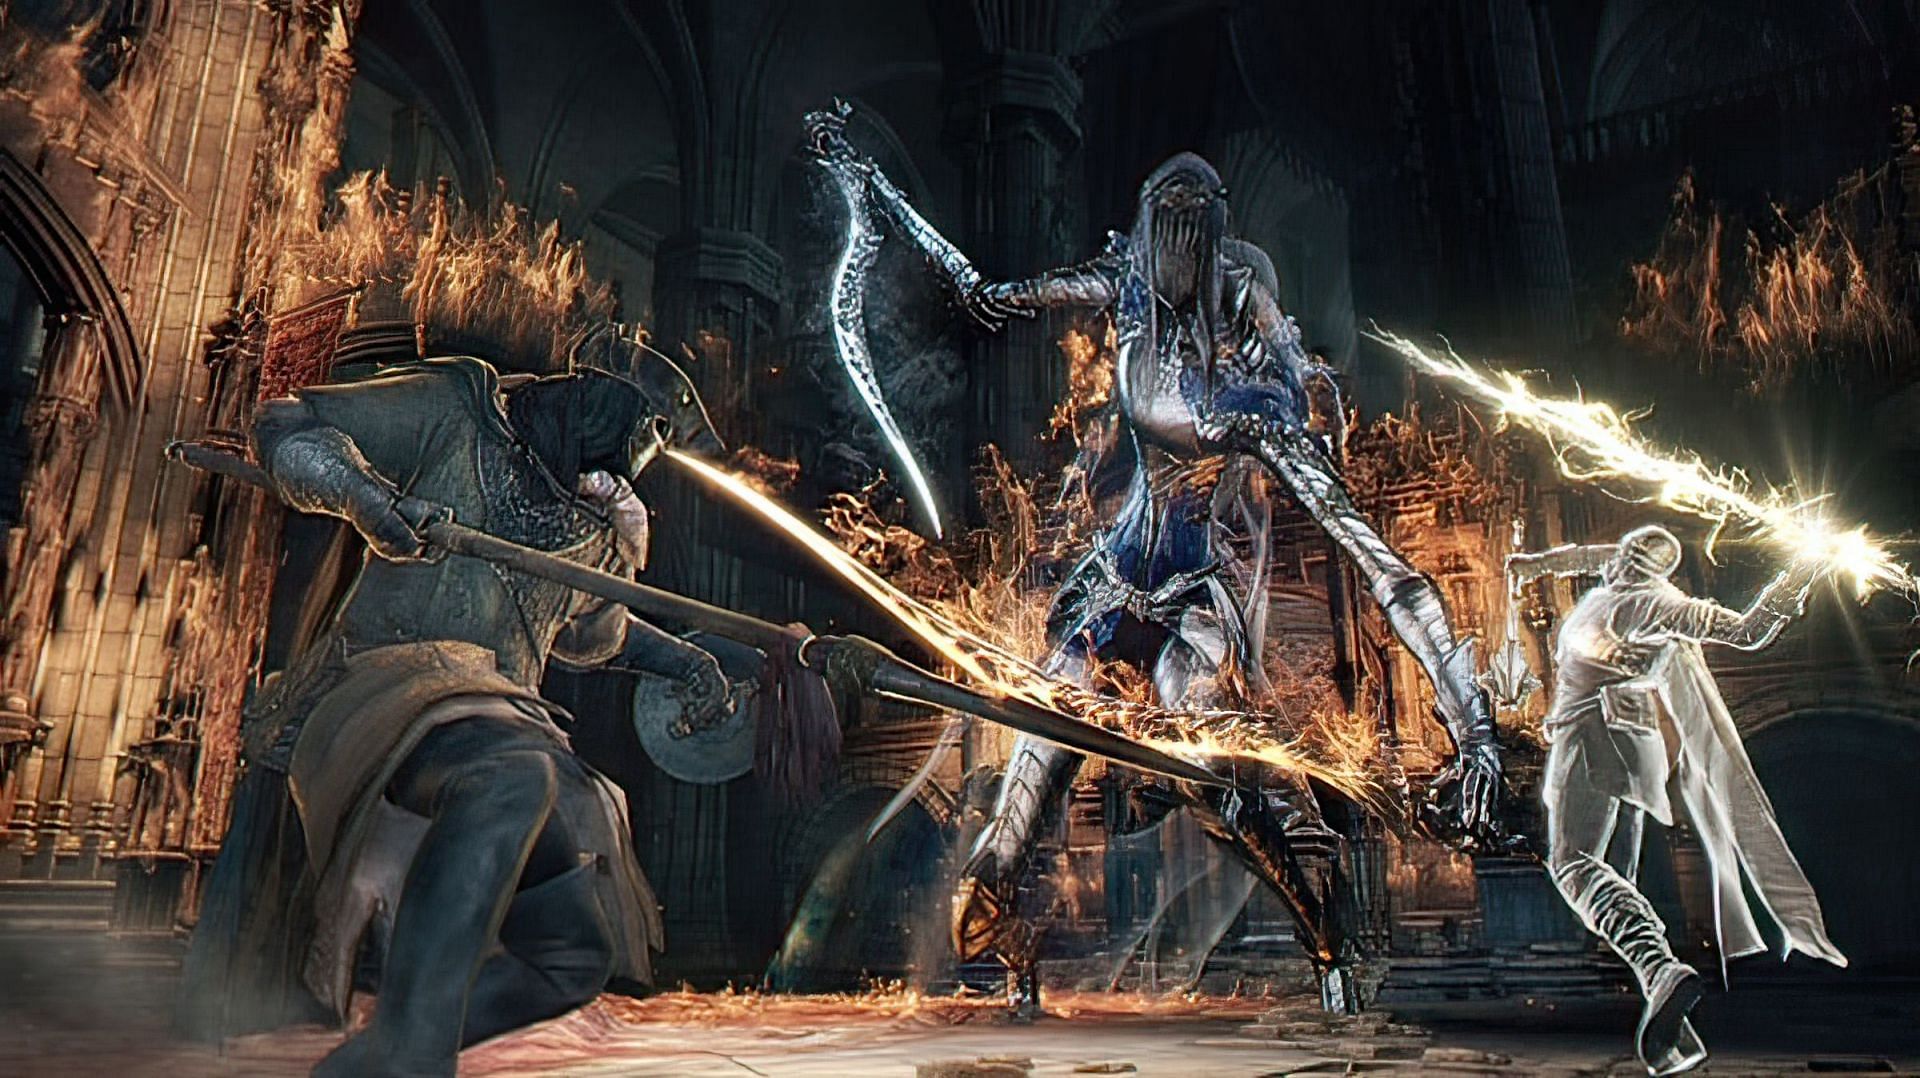 Boss fight in Dark Souls 3 (via FromSoftware Inc.)